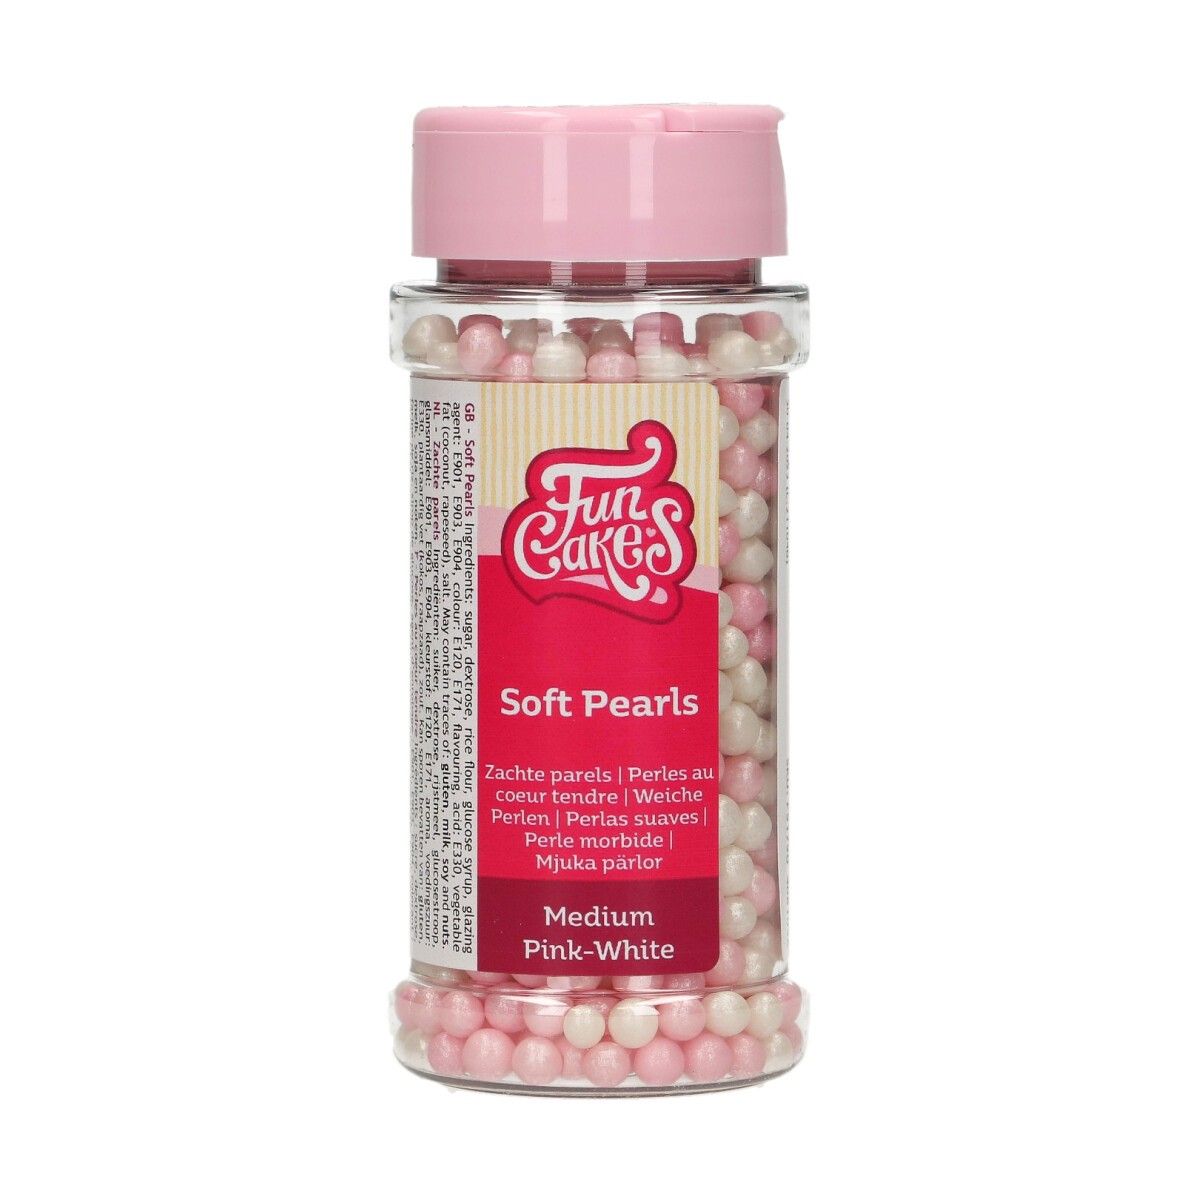 Billede af Soft Pearls Medium Pink-White 60 g